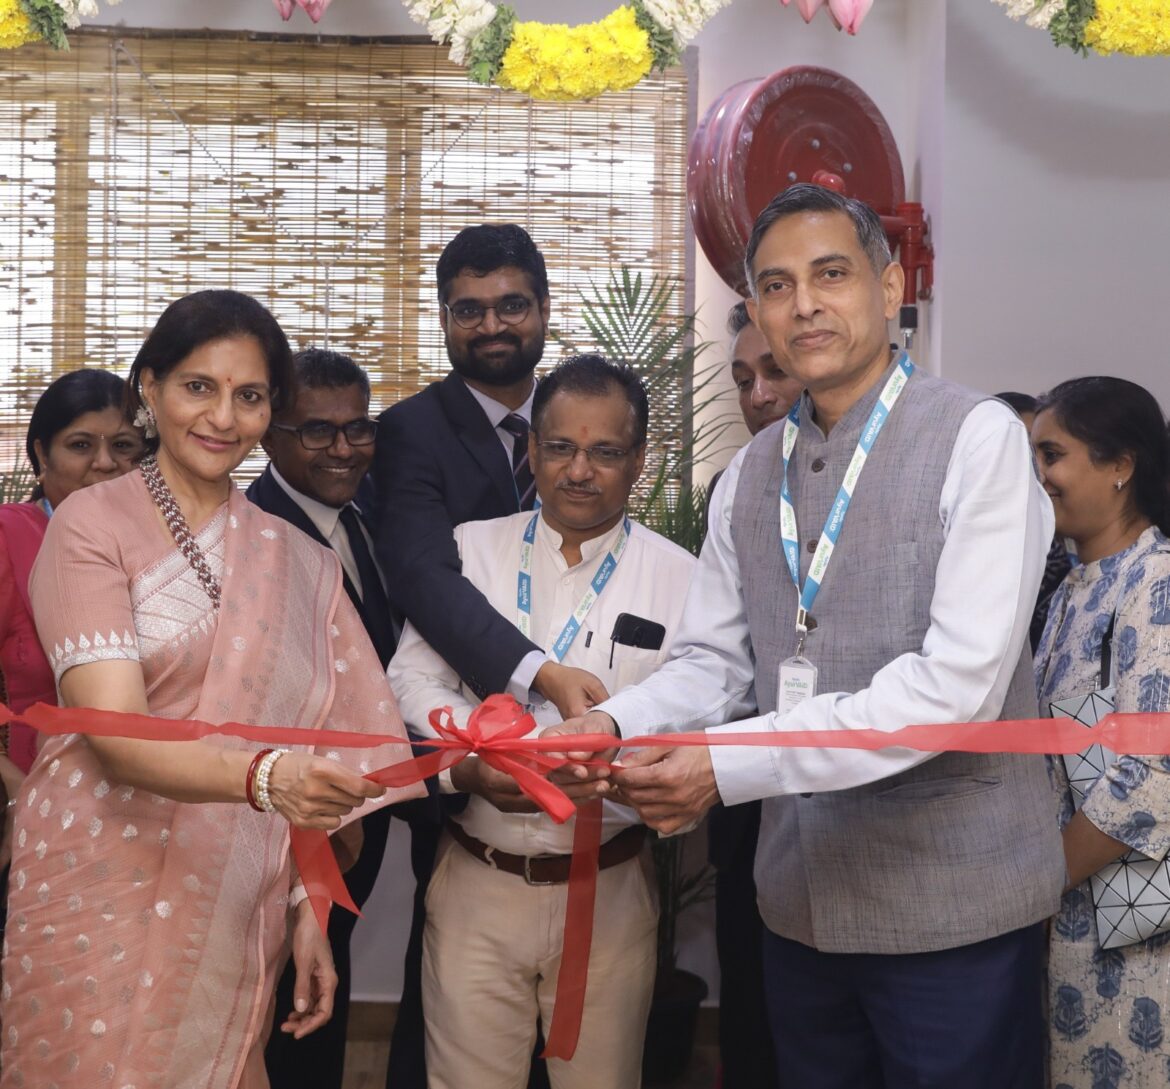 Apollo Hospitals launches Apollo AyurVAID, An Integrative Ayurveda Centre of Excellence at Vanagaram, Chennai